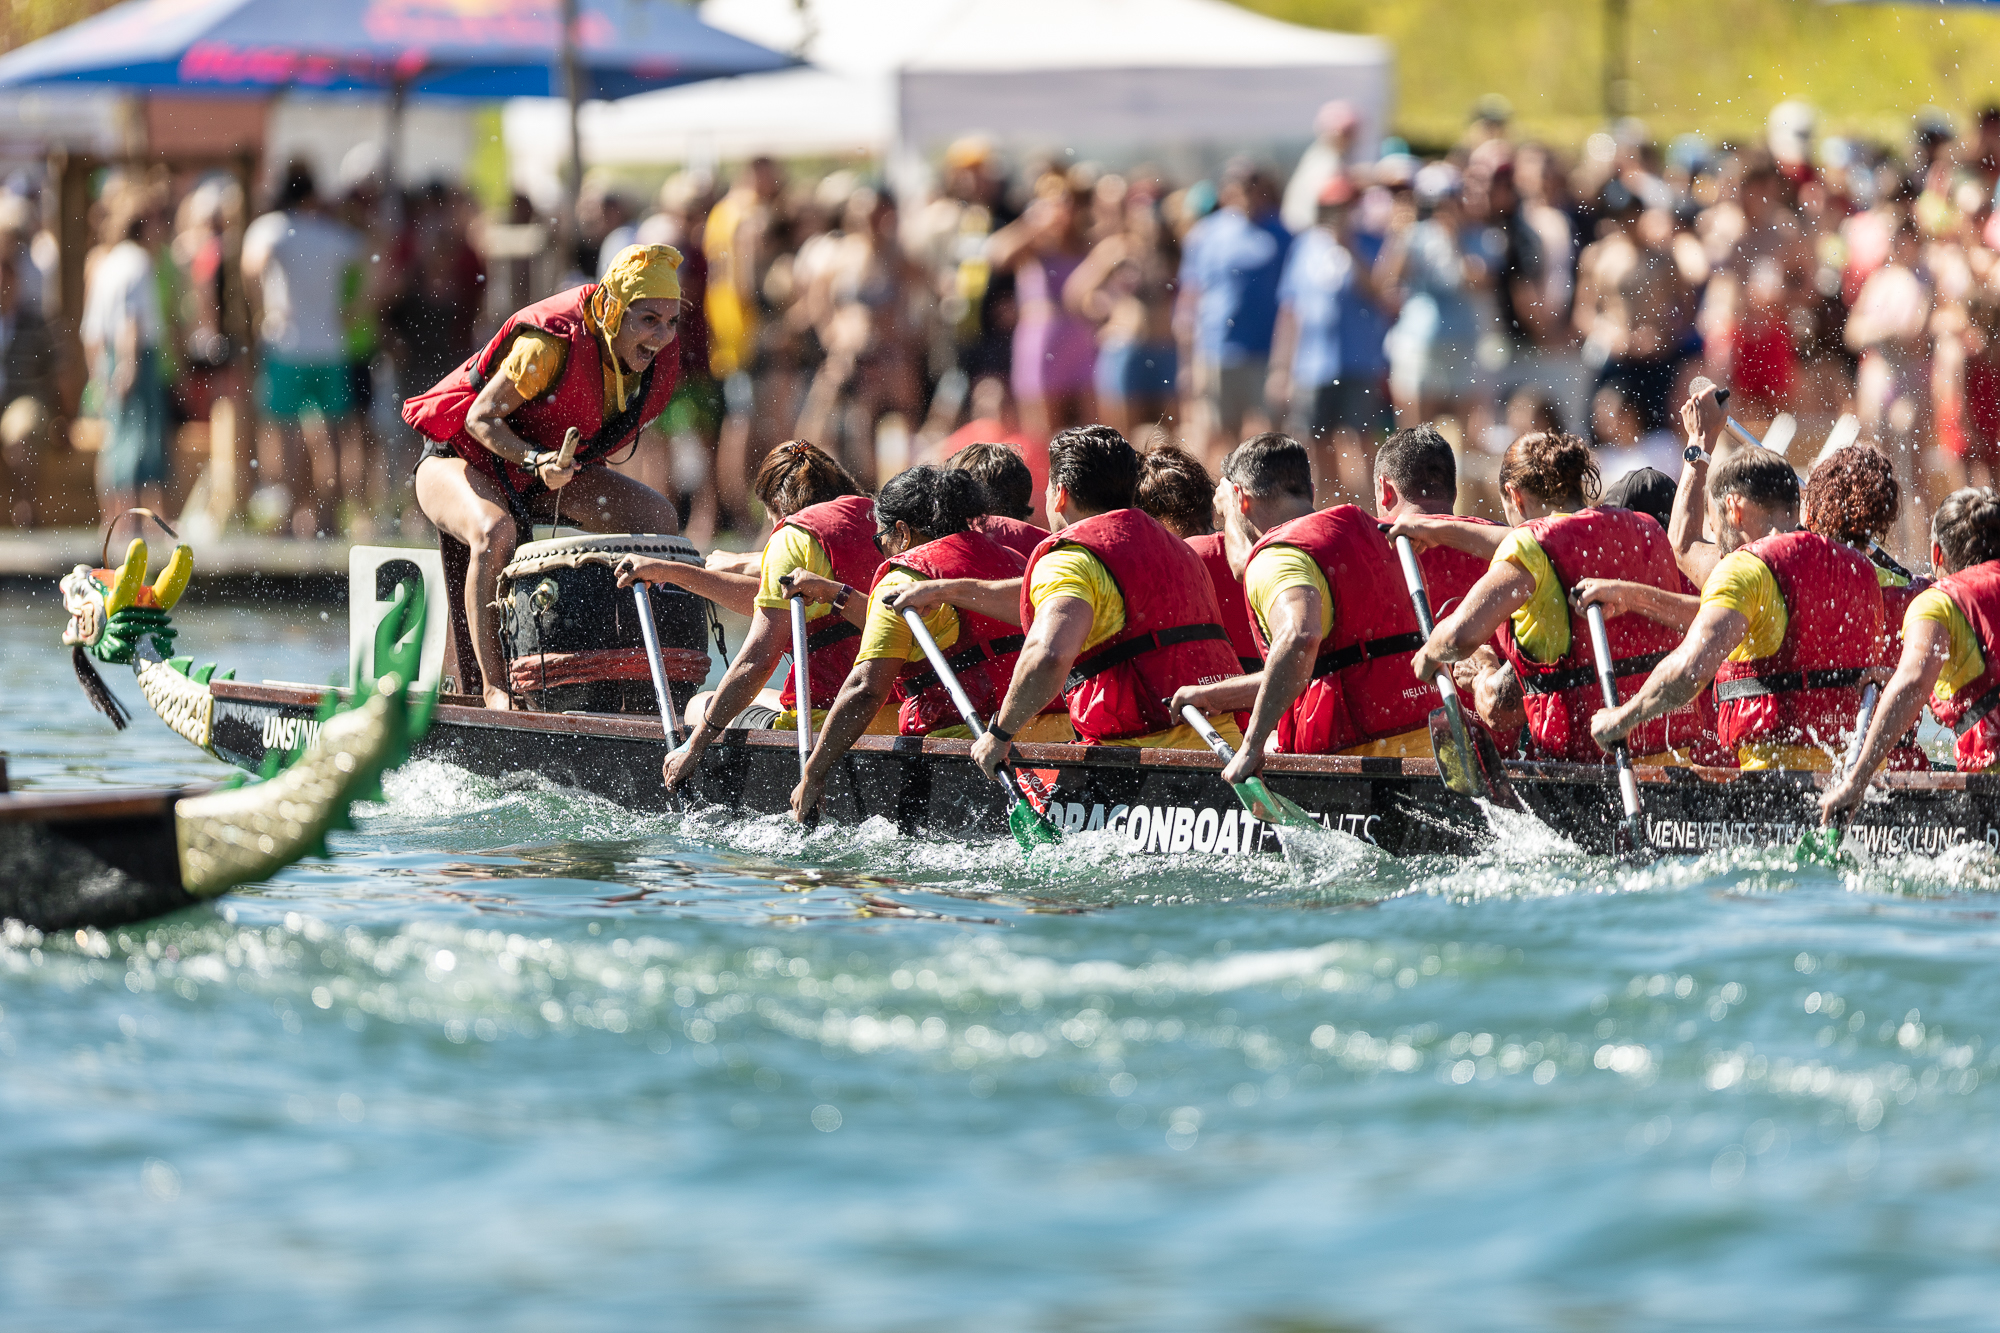 Dragon Boat Race at Züri Fäscht Festival in Zurich